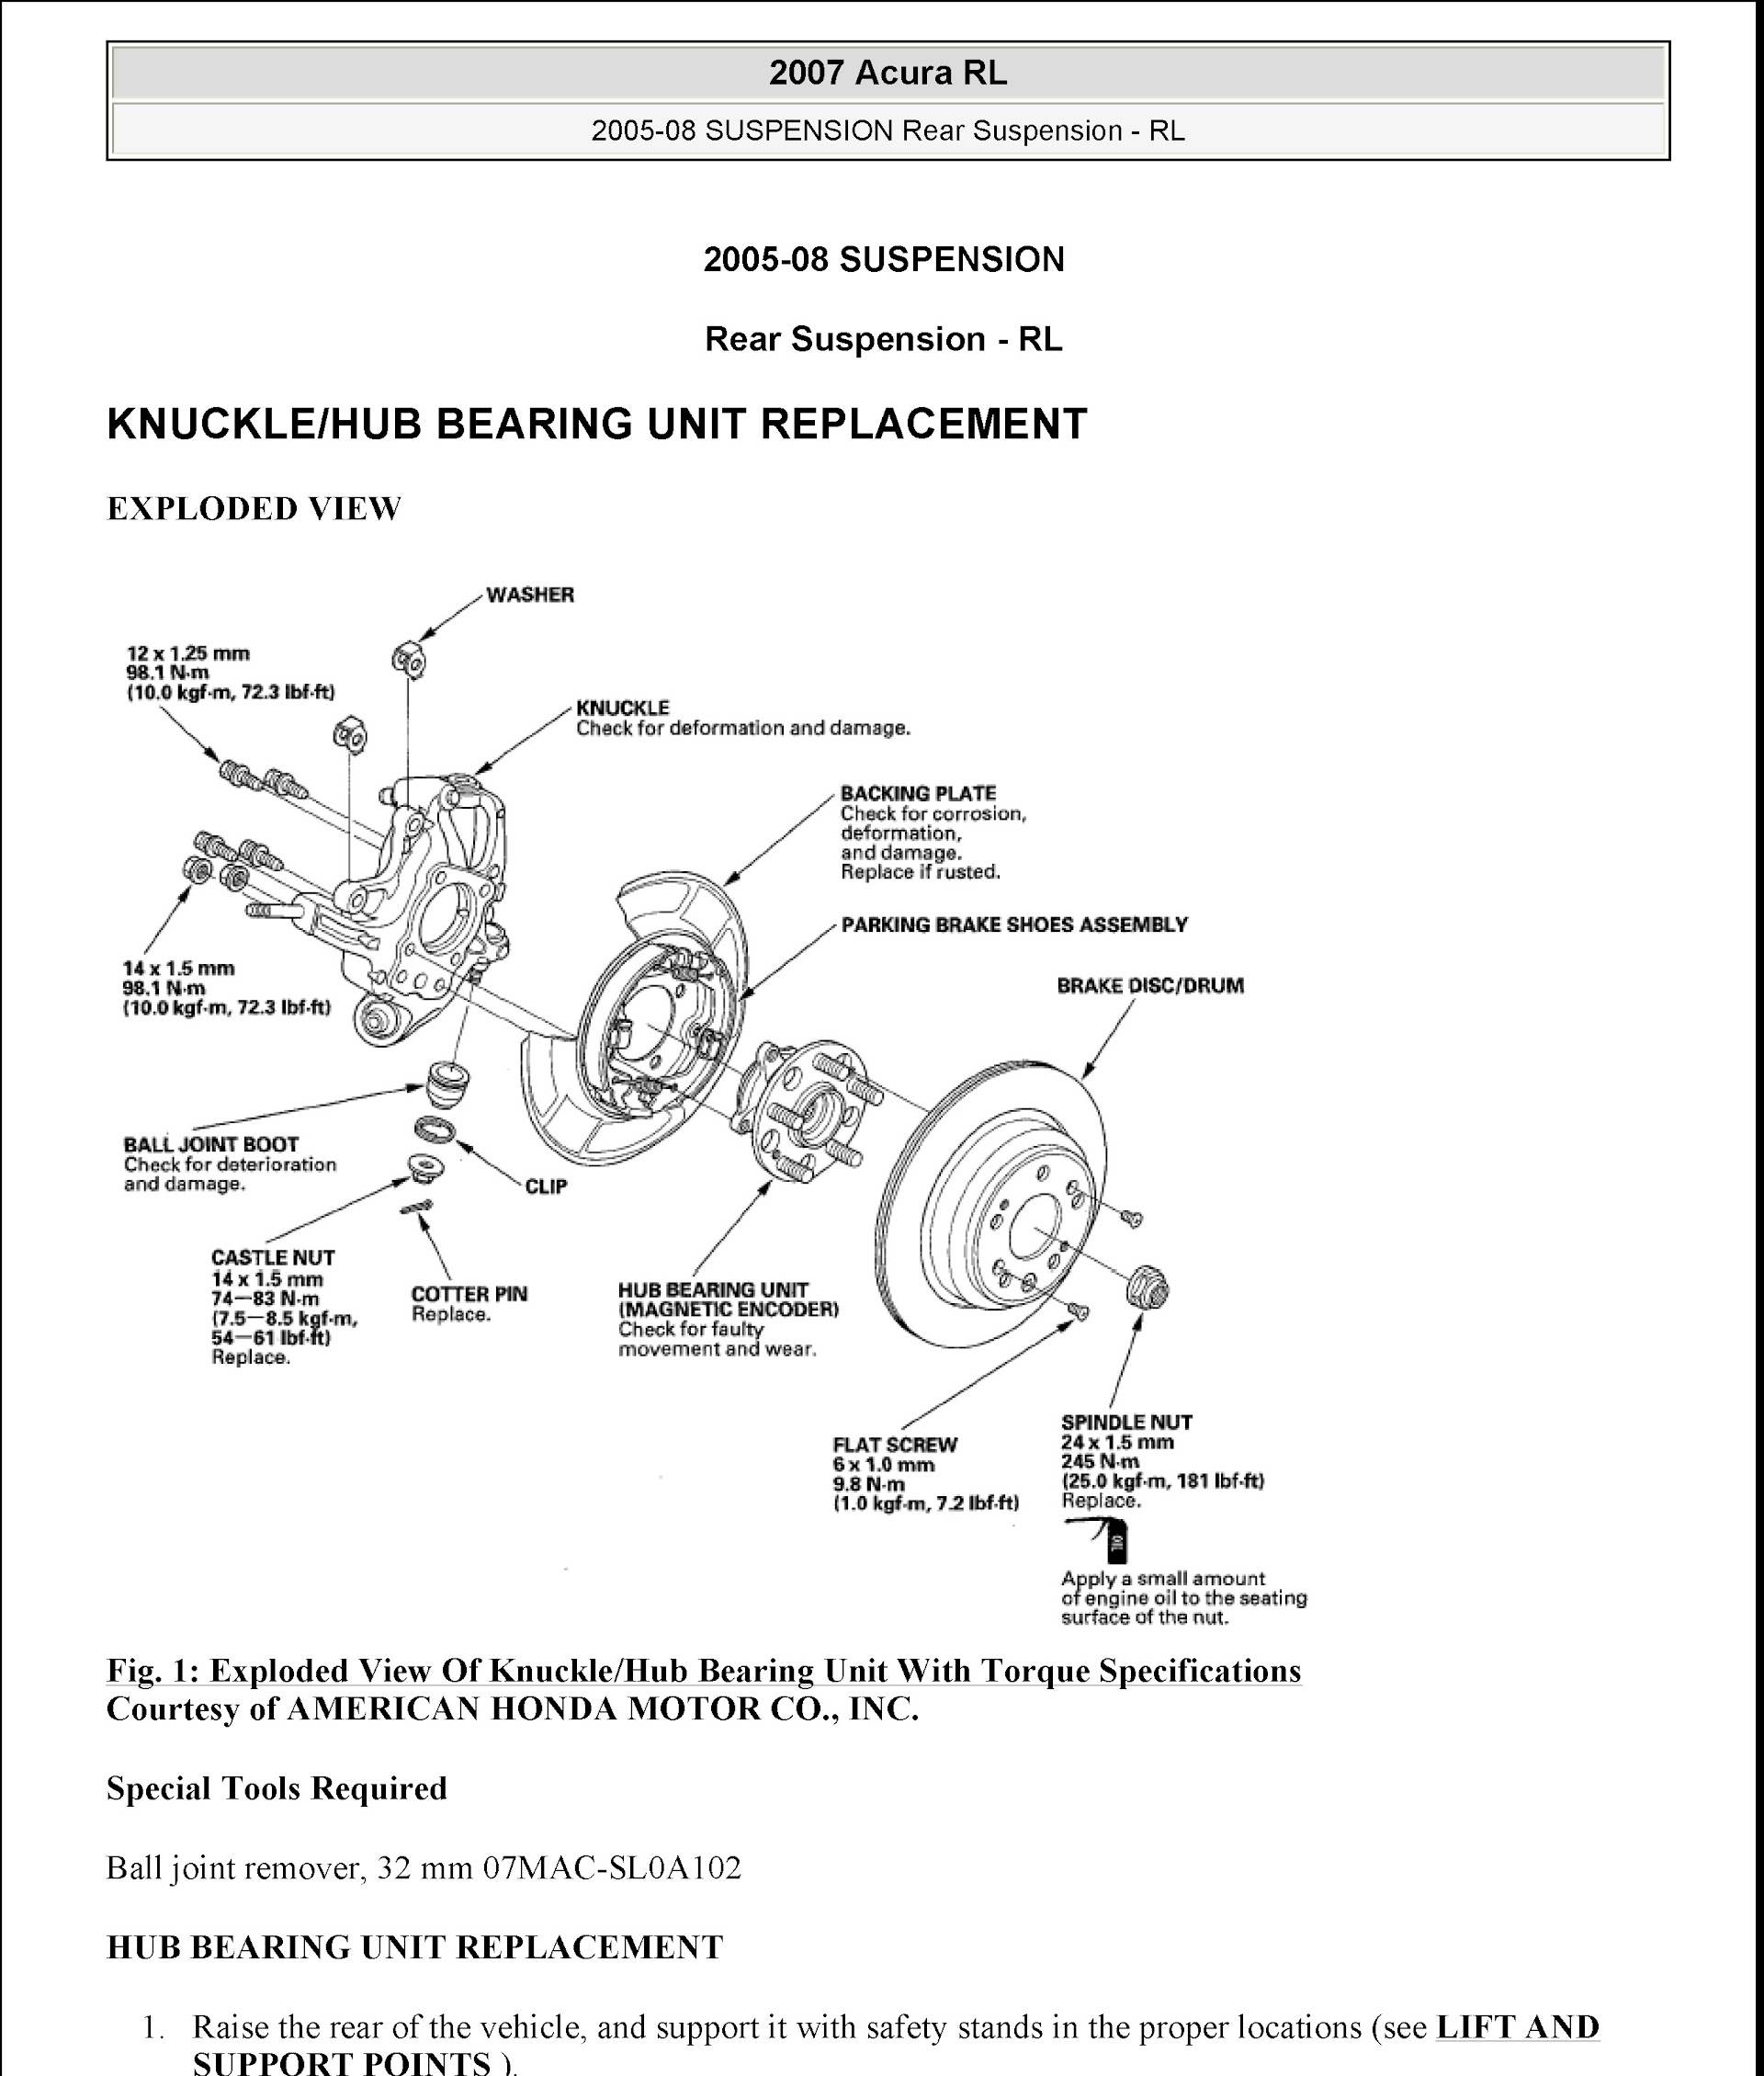 Download 2005-2008 Acura RL Service Repair Manual